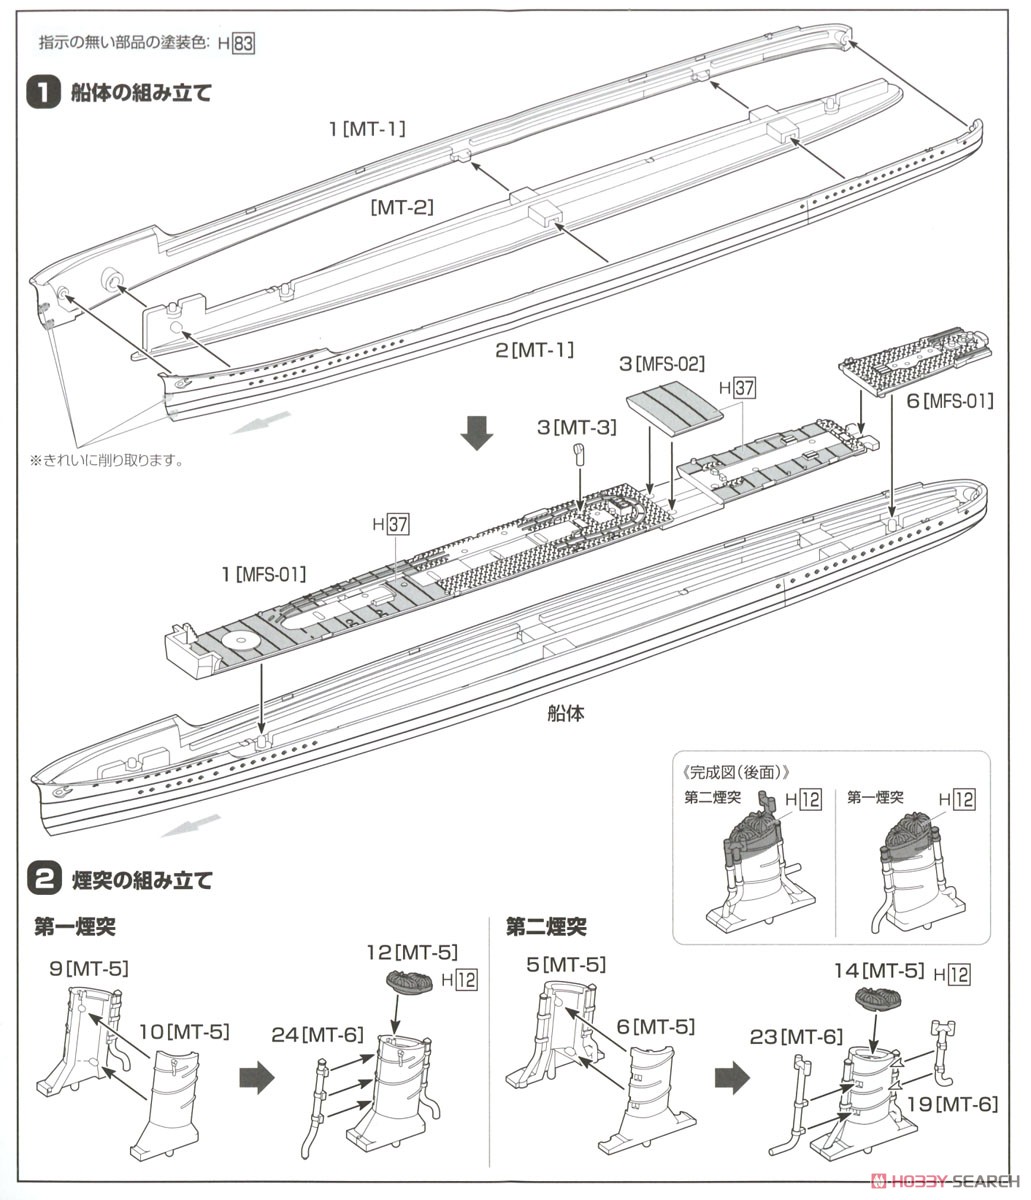 睦月型駆逐艦 文月 1943 (プラモデル) 設計図1